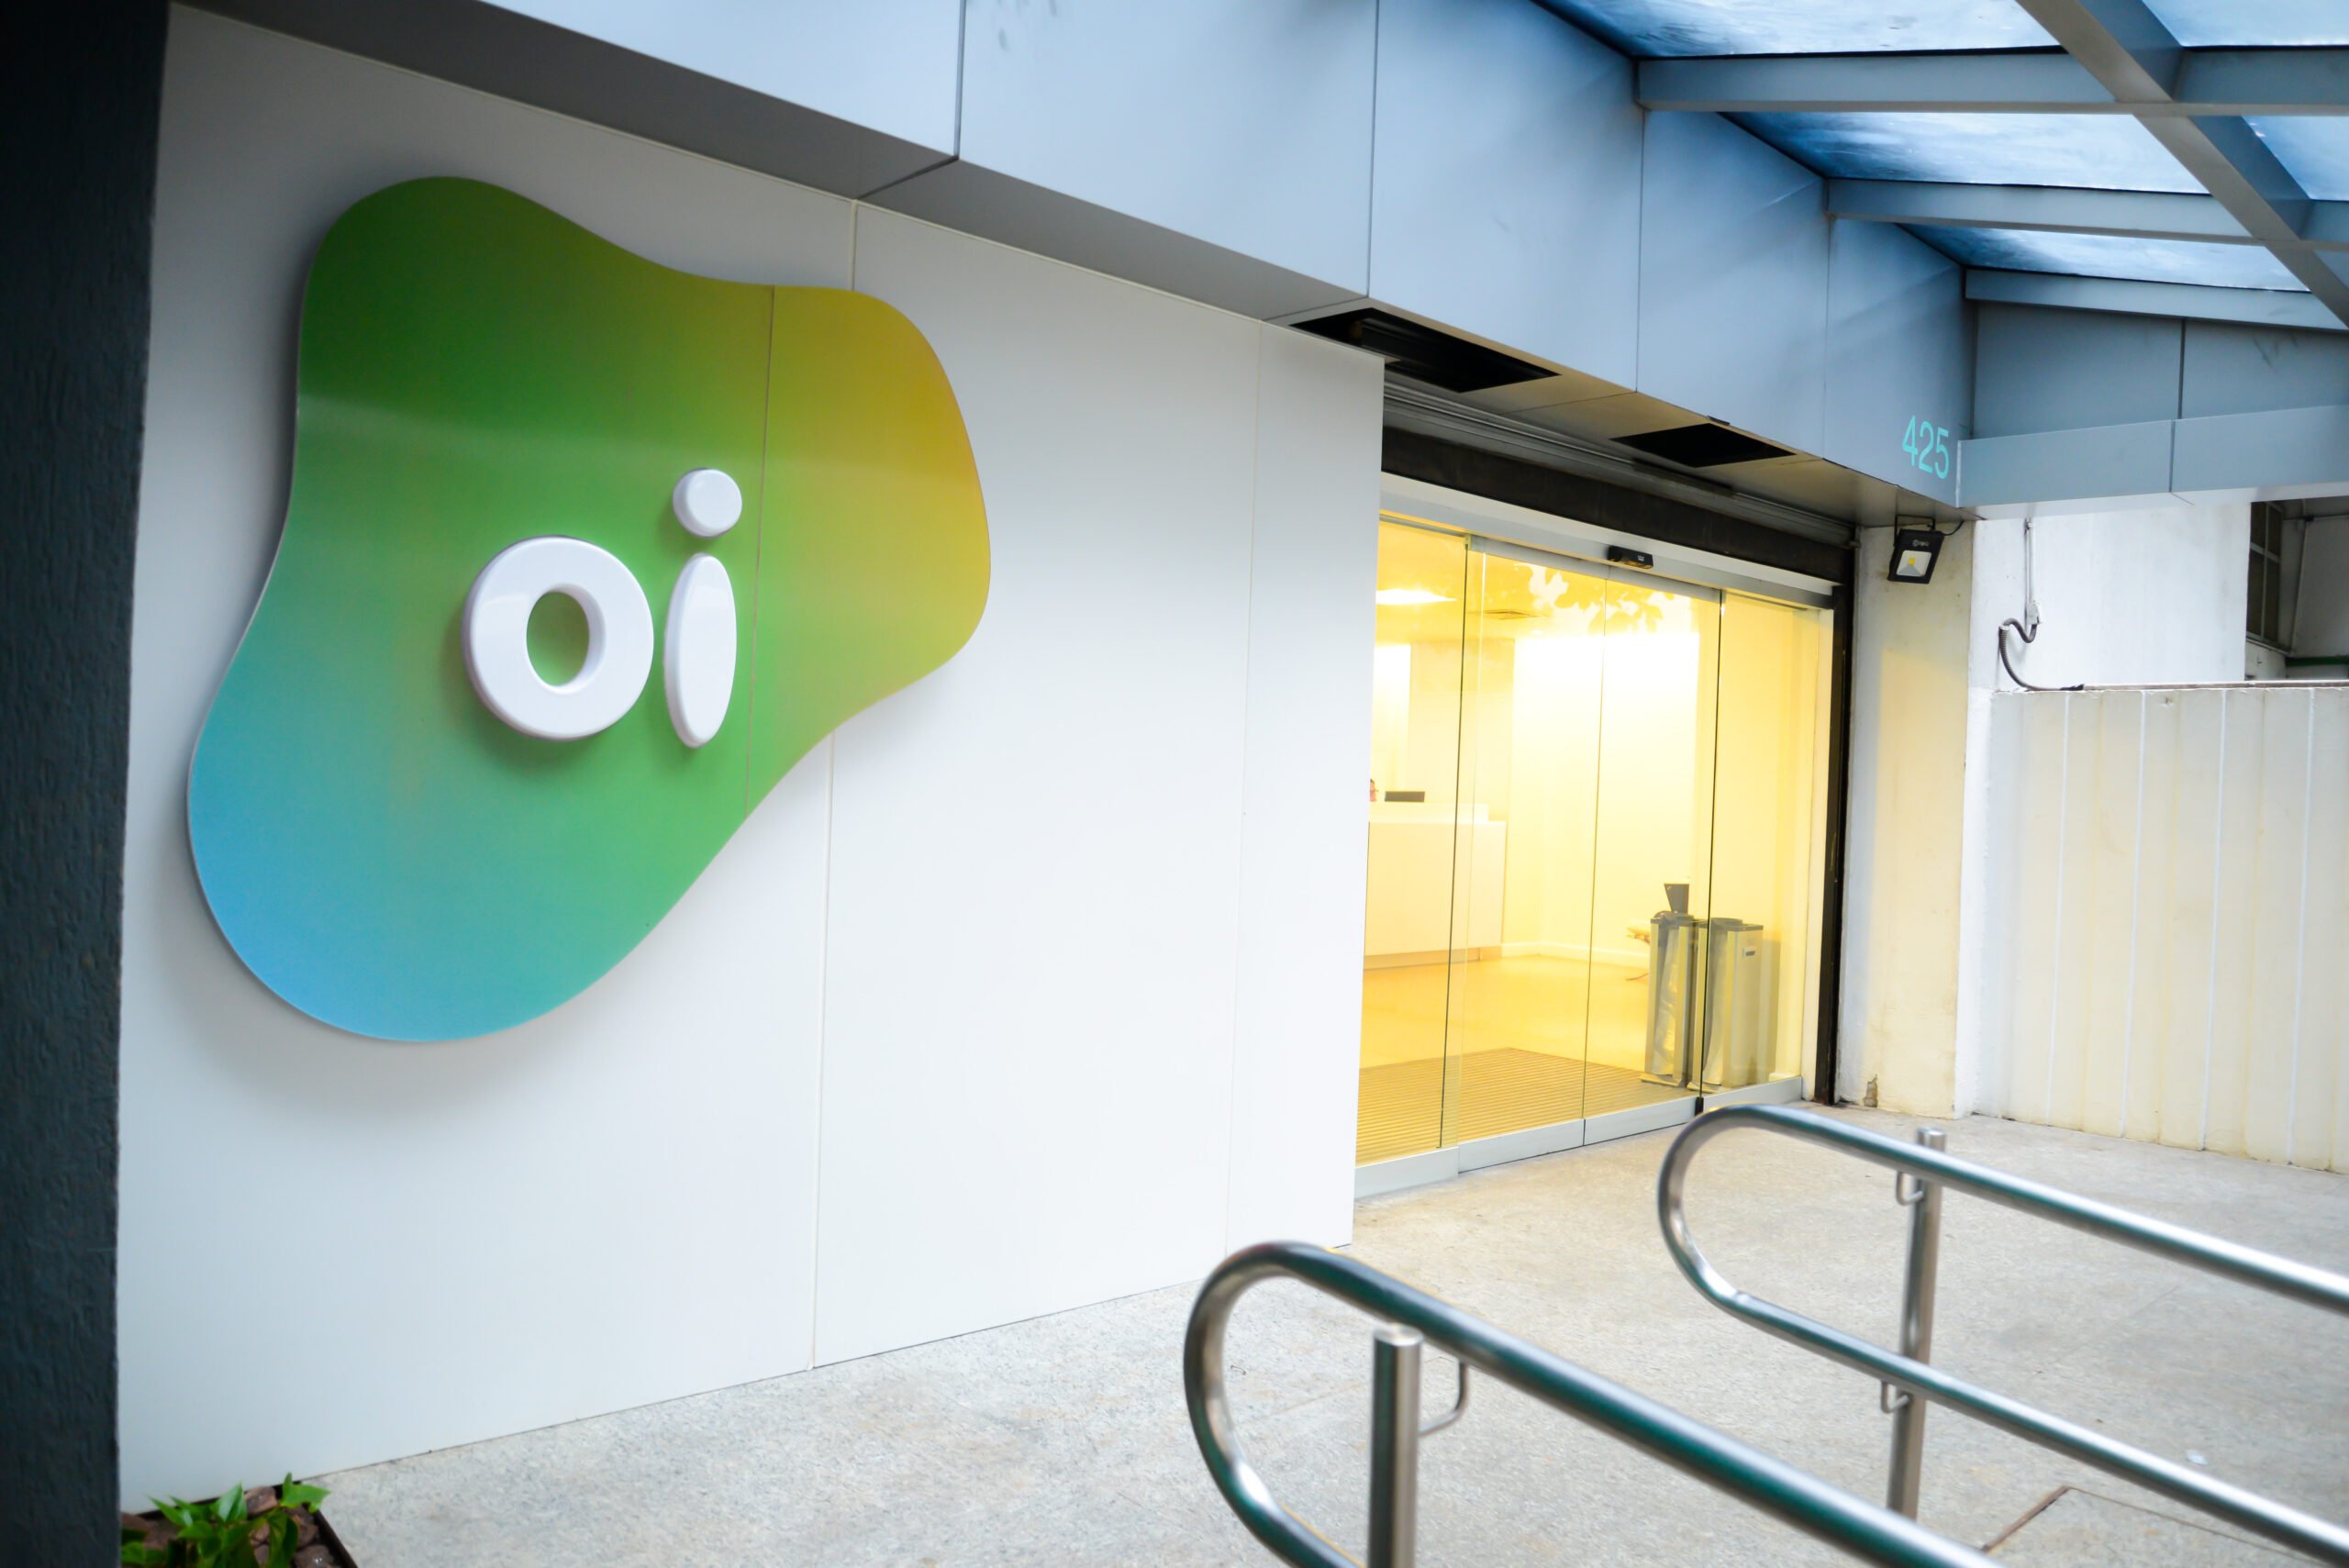 Oi (OIBR3): Anatel pode aprovar venda de fibra ótica para o BTG Pactual (BPAC11) ainda hoje